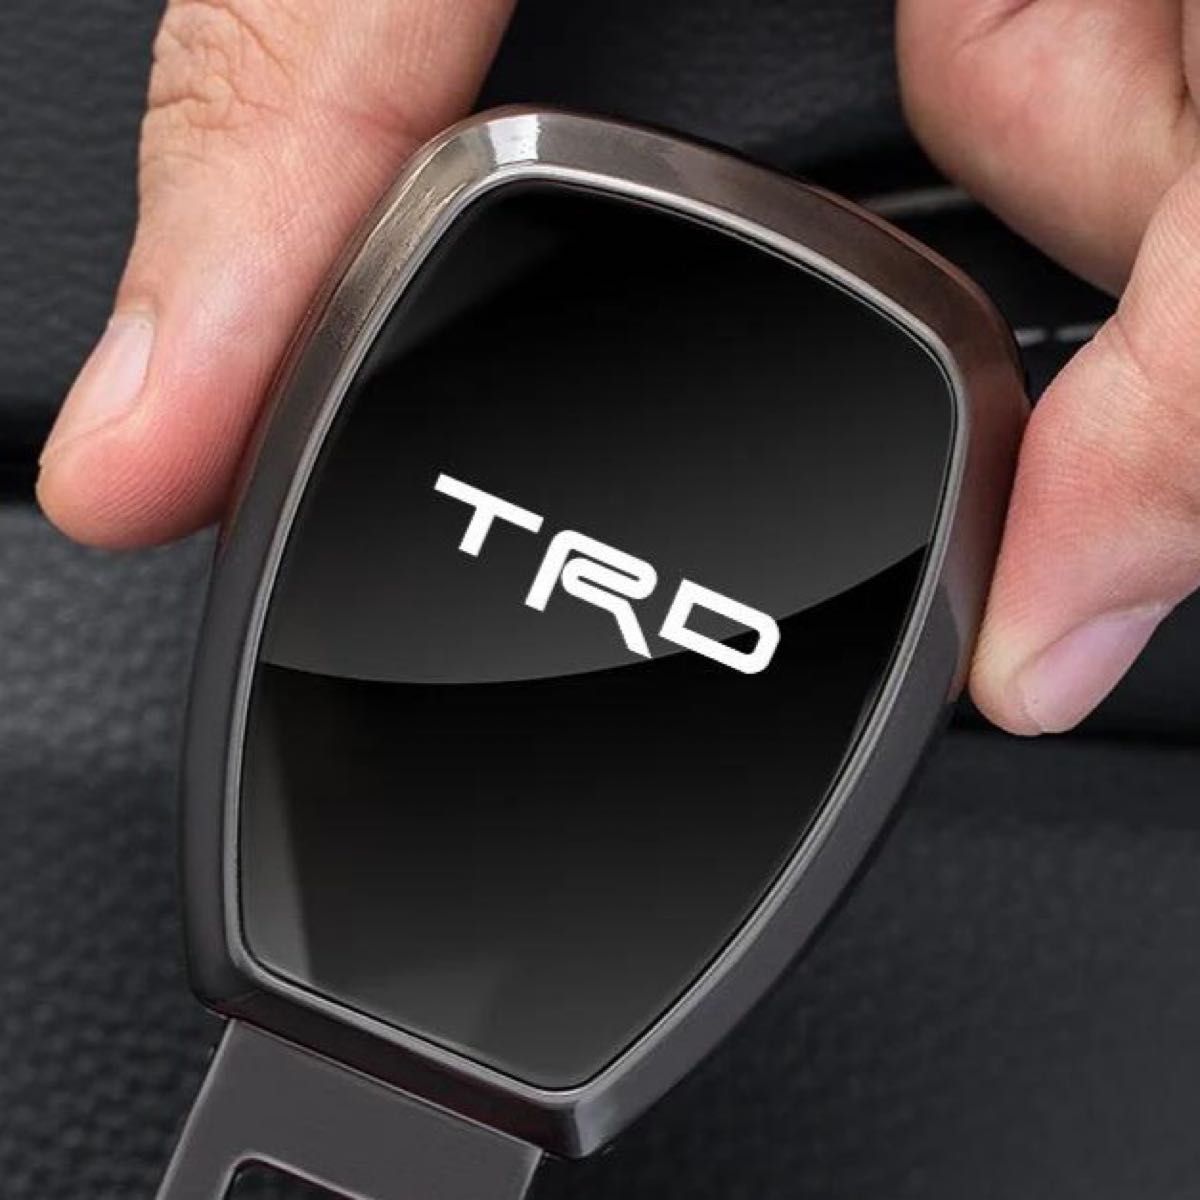 2個セット TRD トヨタ GR 3Dクリスタルエンブレム 14mm 鍵穴マーク 鍵穴隠し キーレス TOYOTA n